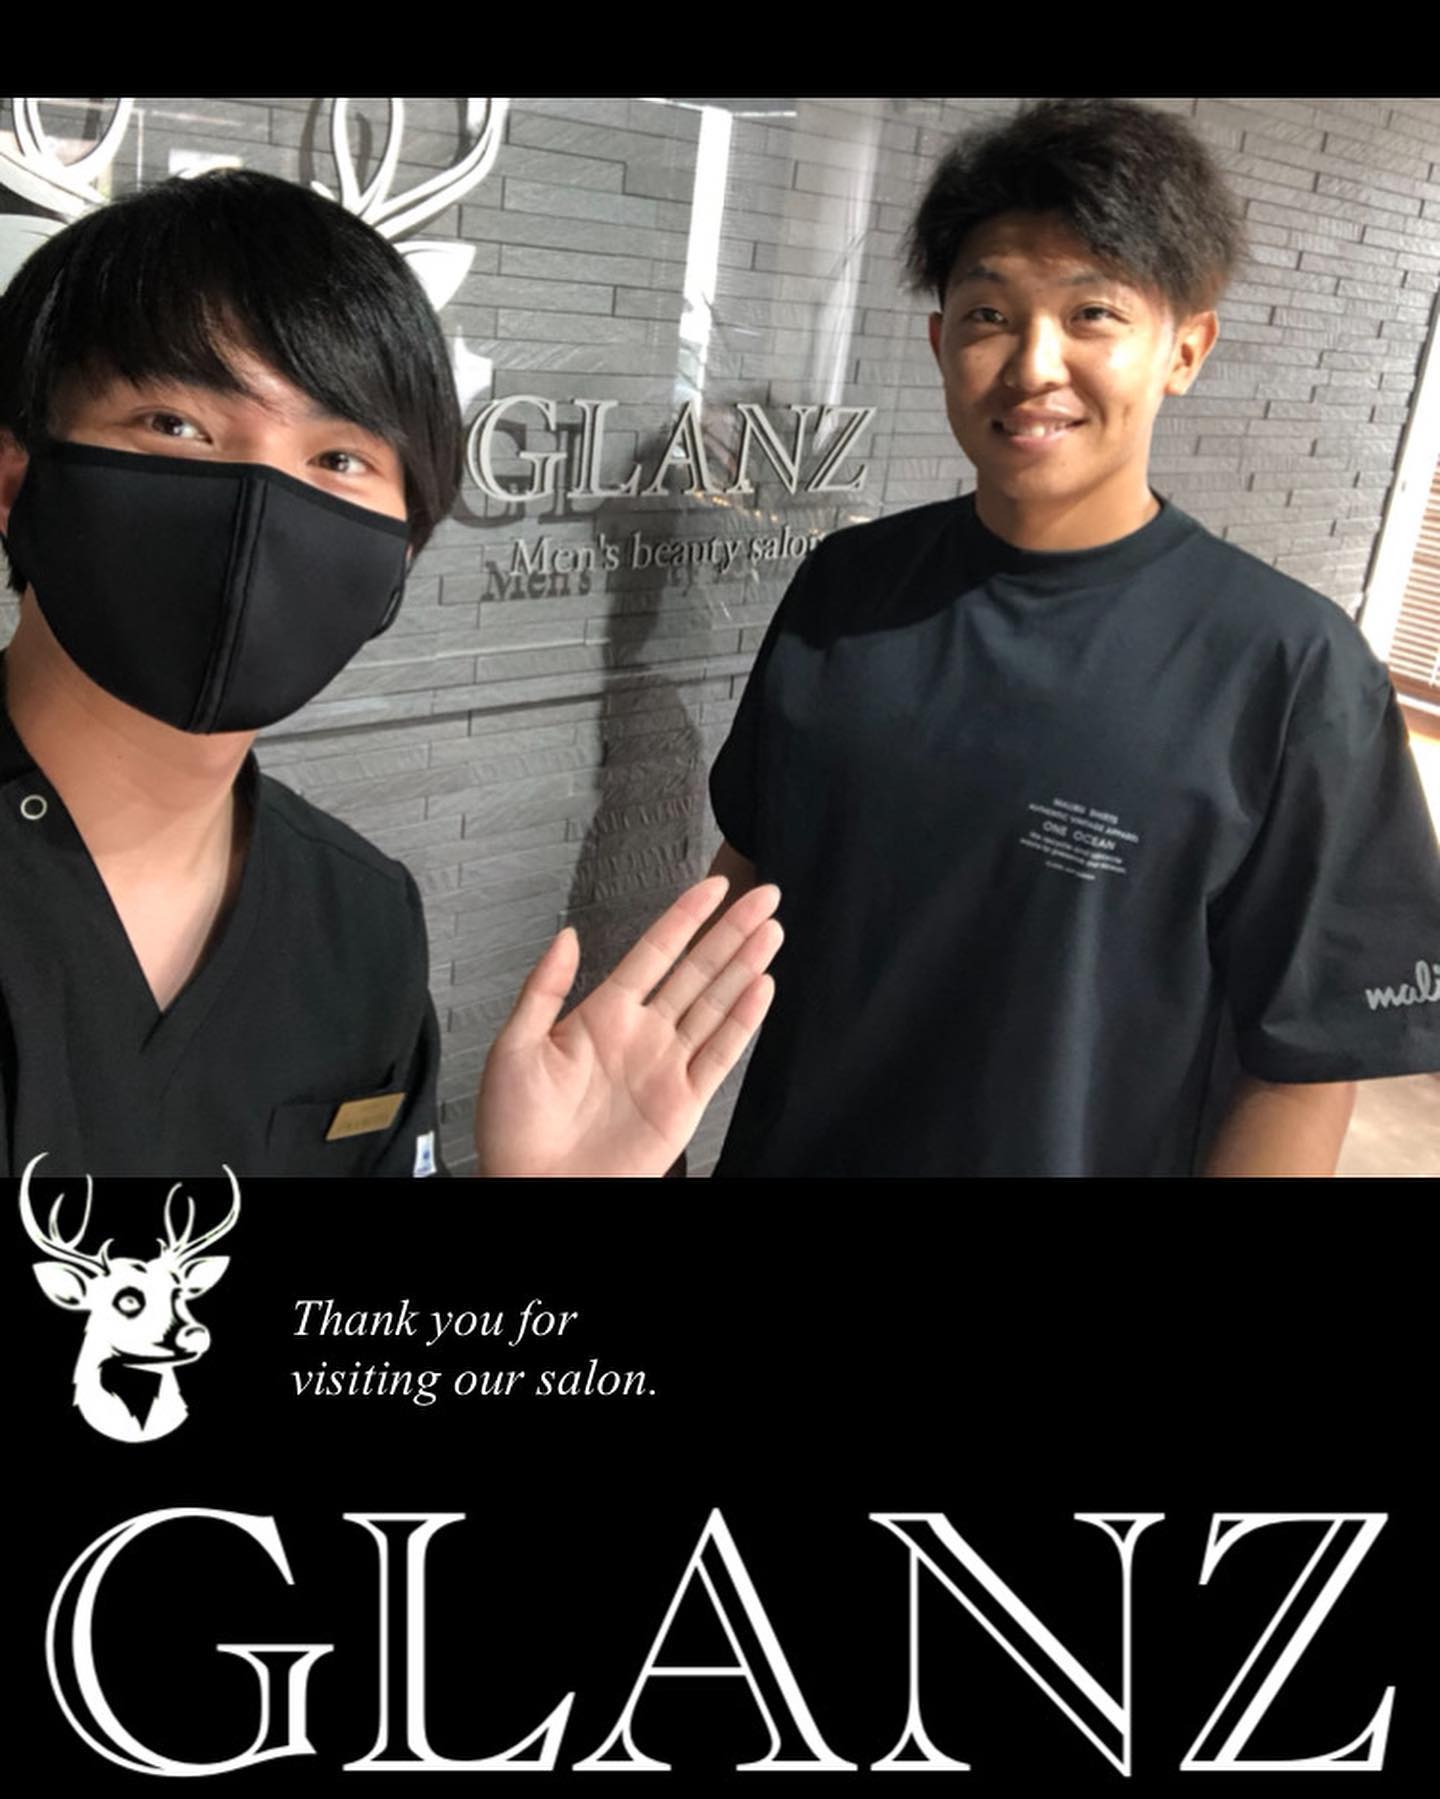 .【ご来店のお客様】.#阪神タイガース で活躍されている#島田海吏 選手がご来店くださいました@tigers.5326 ..お写真ありがとうございますサインもいただいていますので、ご来店の際はご覧になってくださいね🖋..理想のお肌を目指し、GLANZと一緒に頑張っていきましょう！今後とも宜しくお願いいたします️.また次回のご来店をお待ちしております♪..️GLANZ -グランズ-️https://glanzashiya.com/.≪無料カウンセリングのご予約受付中≫／／ HotpepperまたはHPから！ ＼＼.[ADDRESS]〒659-0065 兵庫県芦屋市公光町7-12メインステージ芦屋公光3階.︎阪神本線　阪神芦屋駅徒歩1分︎近隣にコインパーキング多数有り︎芦屋警察署の裏.[TEL]080-6521-5785.[MAIL]glanz.ashiya@icloud.com.[営業時間]11:00〜21:00(最終受付20:00).[定休日]不定休.———————————————————...#ひげ脱毛 #メンズ脱毛 #髭脱毛 #ヒゲ脱毛 #男性脱毛 #男性美容 #芦屋脱毛サロン #光脱毛 #ワックス脱毛 #芦屋 #メンズ脱毛サロン #芦屋エステ #全身脱毛 #神戸脱毛 #神戸メンズ脱毛 #メンズ脱毛サロン #西宮メンズ脱毛 #vio脱毛 #芦屋市 #西宮メンズサロン #芦屋脱毛 #脱毛キャンペーン #西宮脱毛  #脱毛 #脱毛器 #脱毛サロン #芦屋メンズ脱毛 #阪神タイガース #tigers ＃島田海吏選手 .